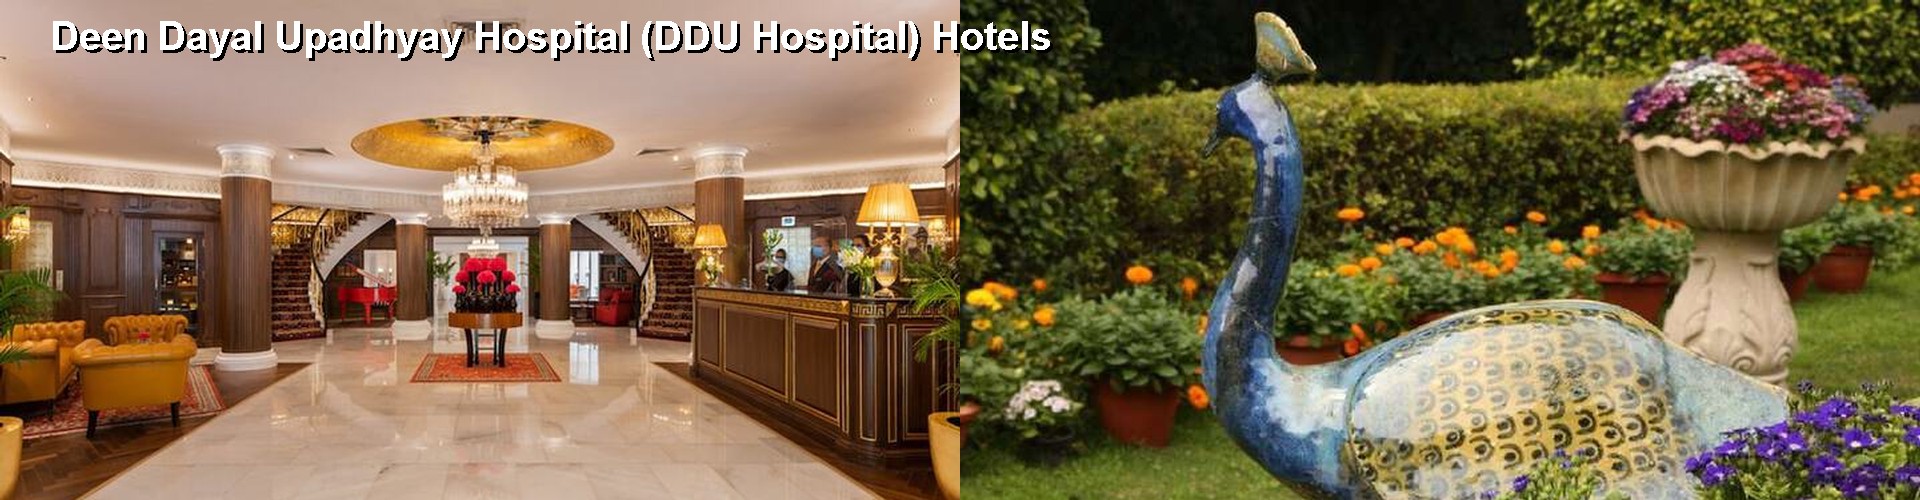 5 Best Hotels near Deen Dayal Upadhyay Hospital (DDU Hospital)